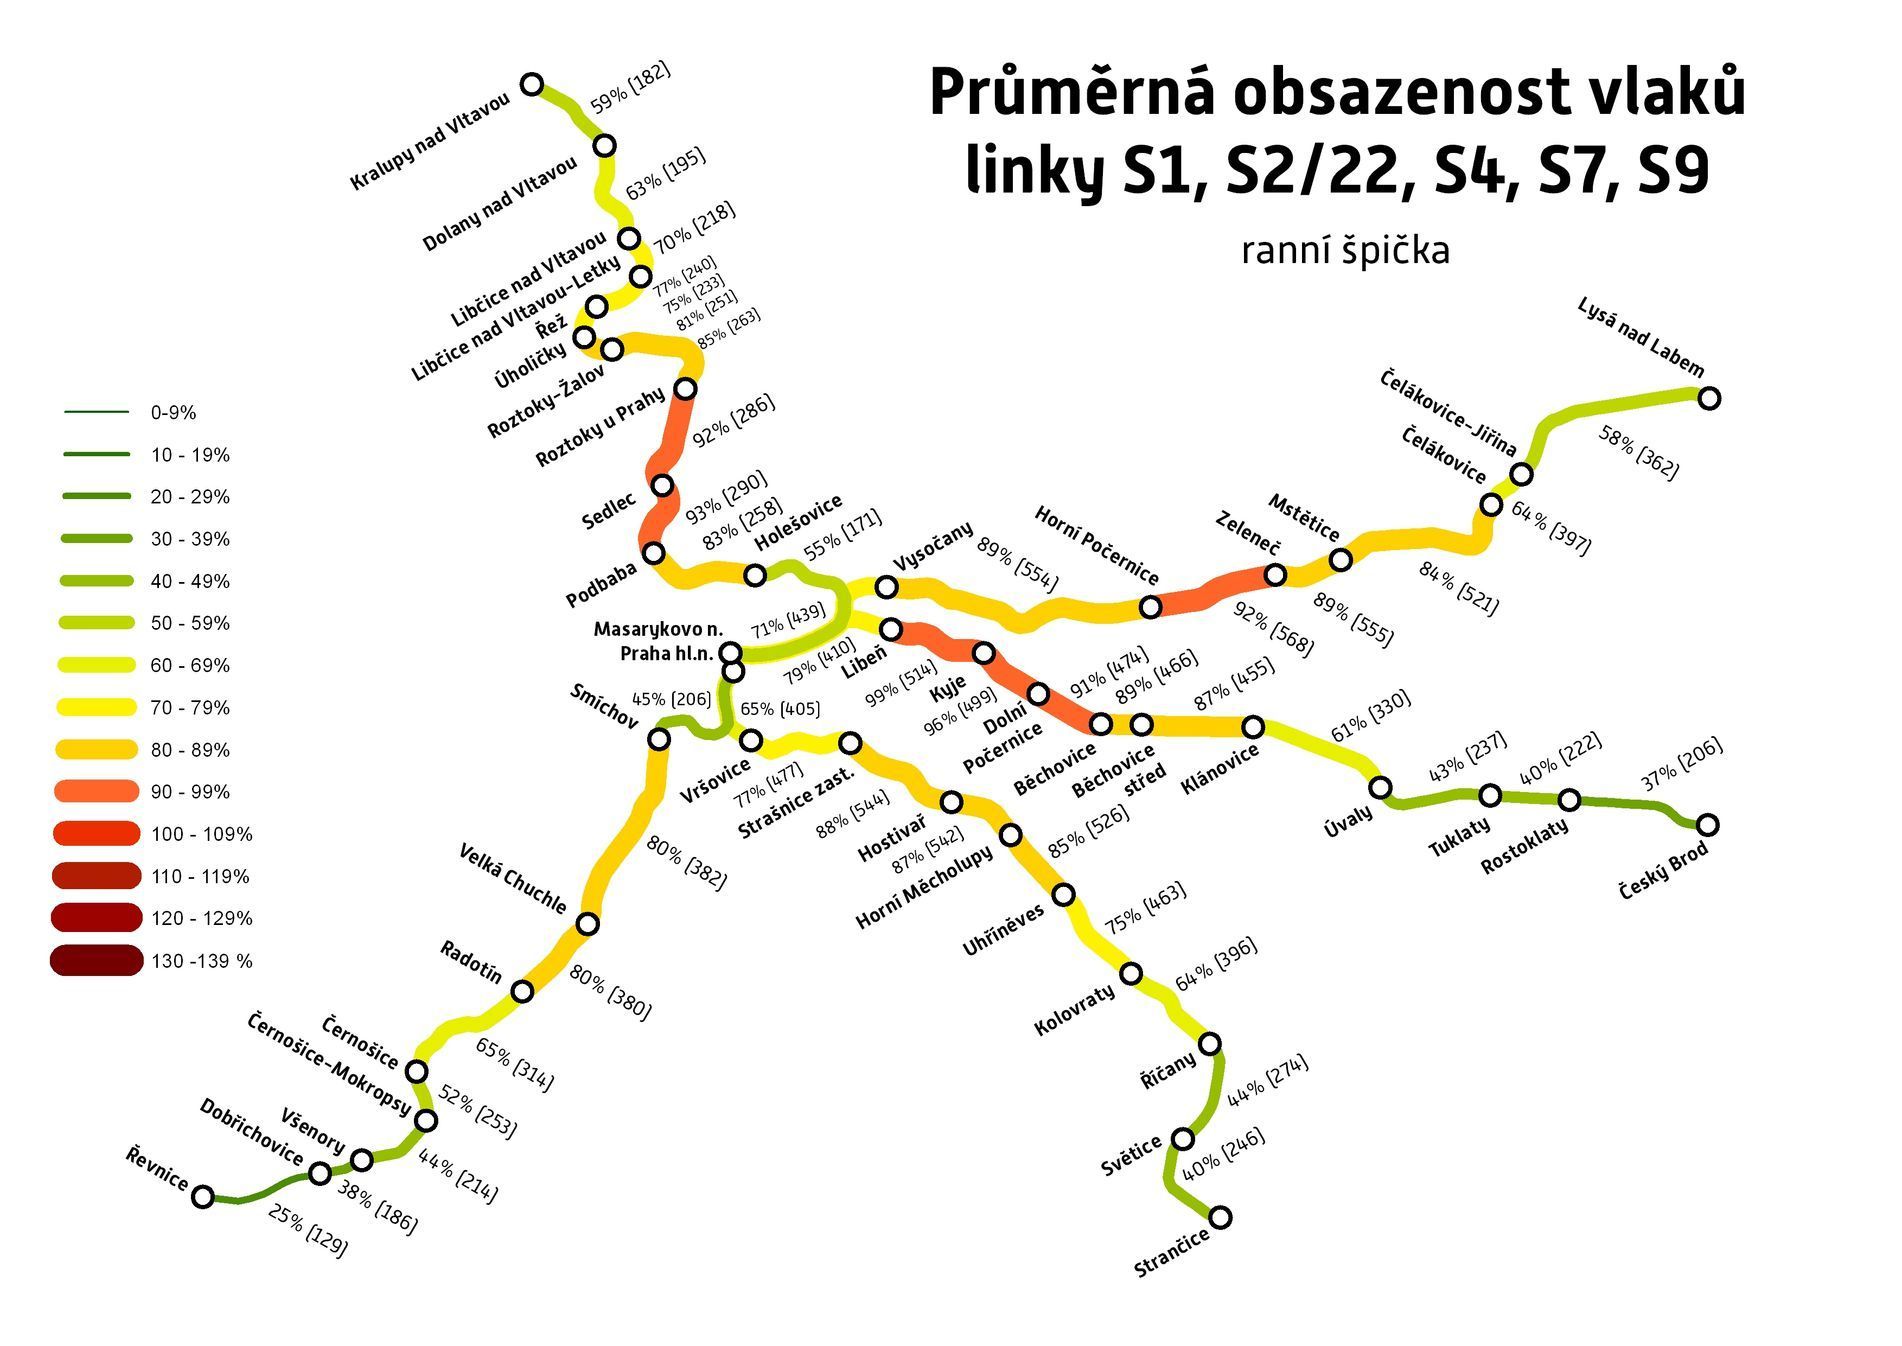 Obsazenost ranních vlaků v okolí Prahy.